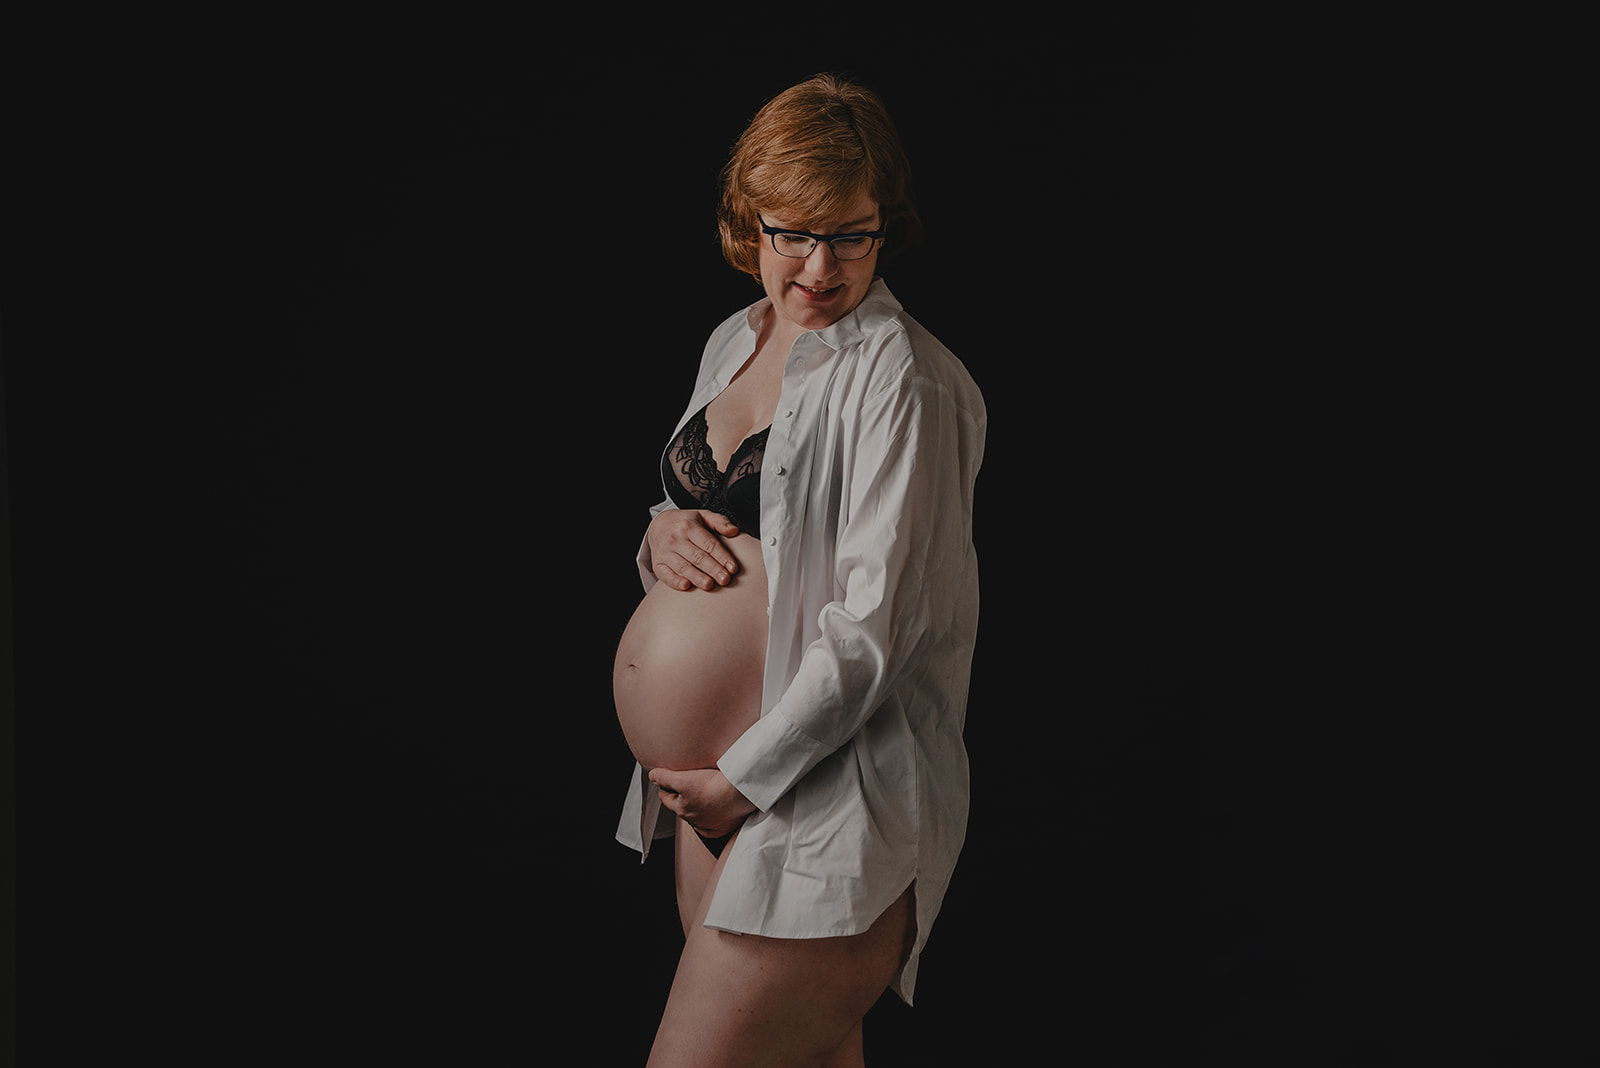 zwangerschapsfotoshoot gelderland overijssel zwolle deventer raalte studio vaassen elburg doornspijk zwanger fotoshoot